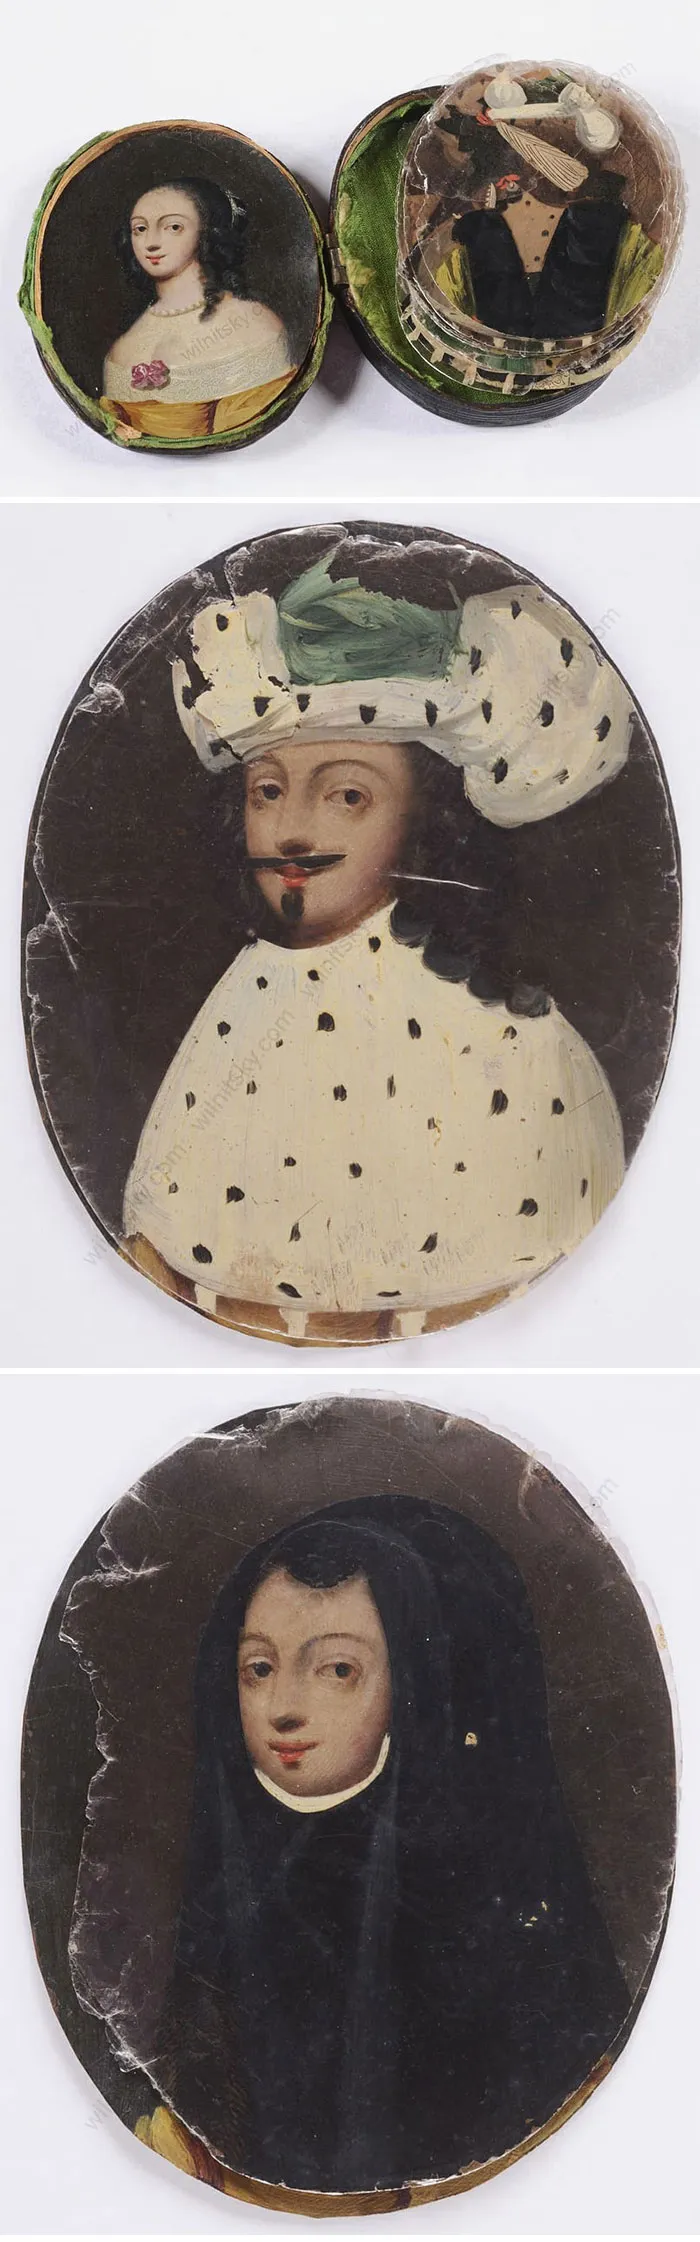 Пример необычного увлечения середины 1600-х годов — миниатюрные портреты маслом, выполненные с использованием прозрачных кусочков слюды. Сегодняшний аналог — фильтры для соцсетей.